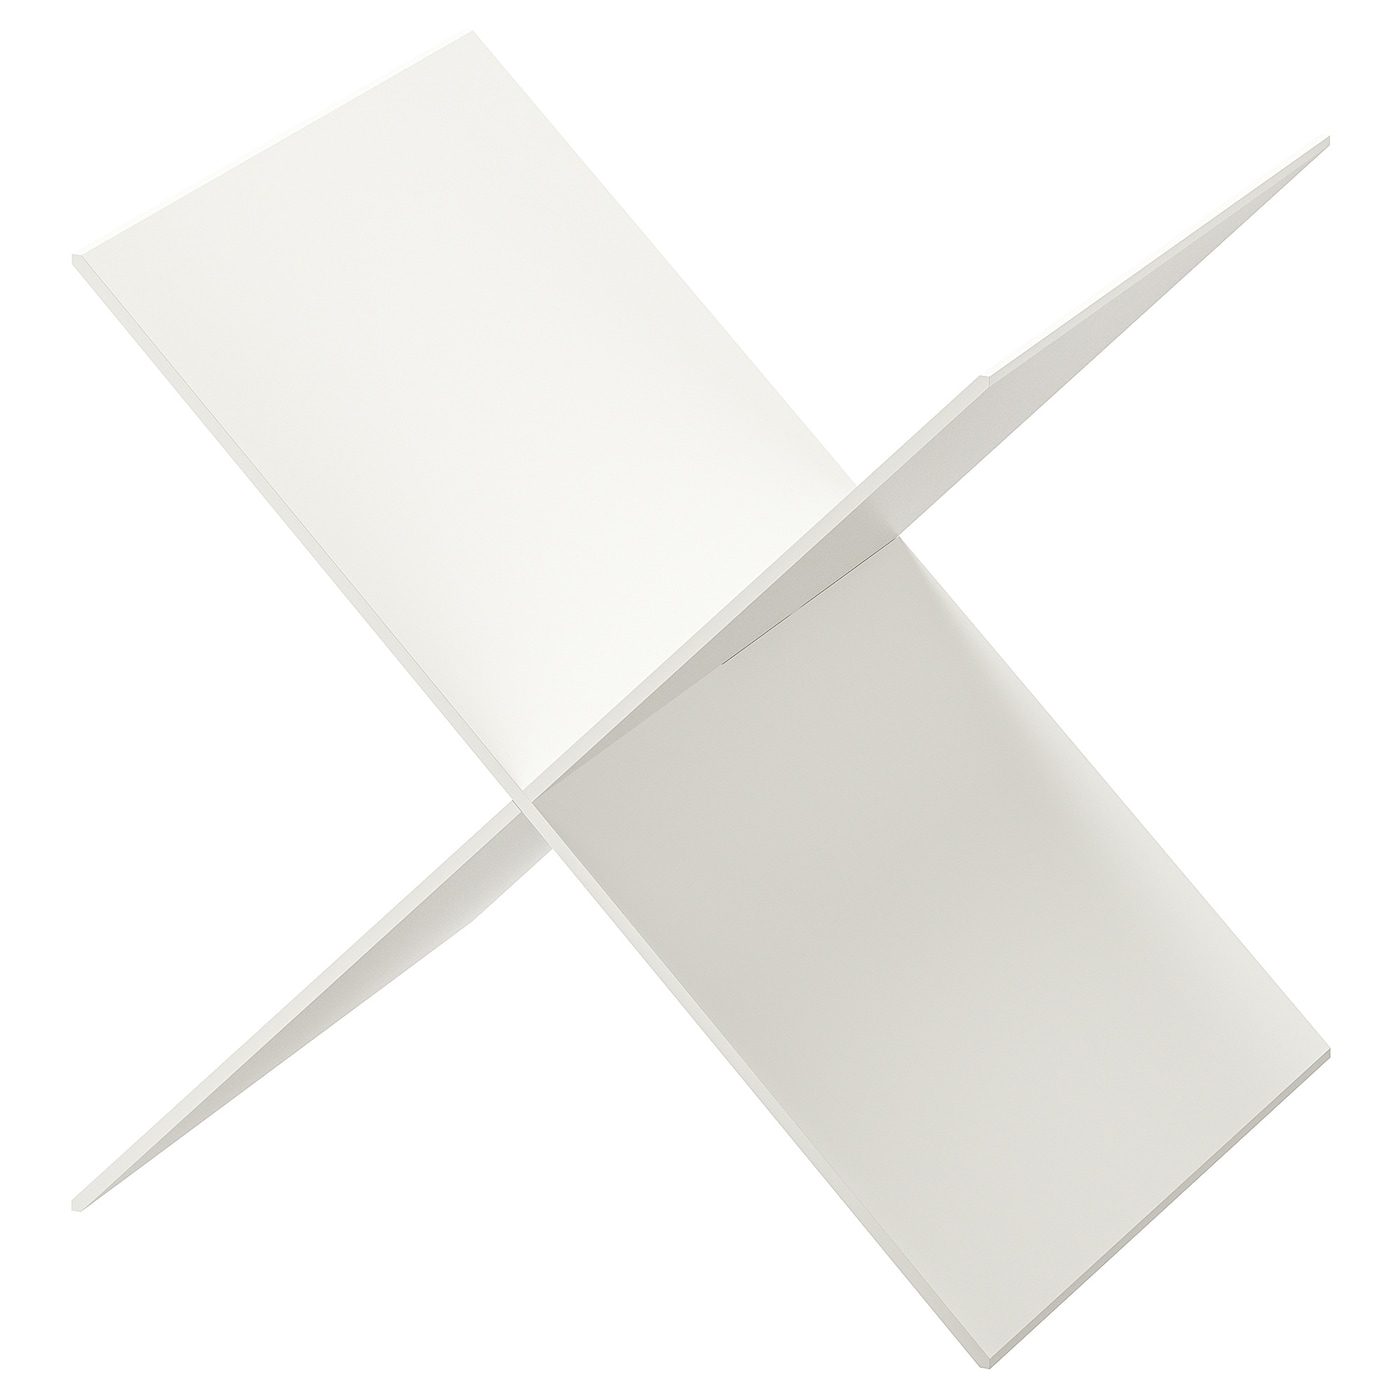 Разделитель для ящика - IKEA KALLAX/КАЛЛАКС ИКЕА,33x33 см белый